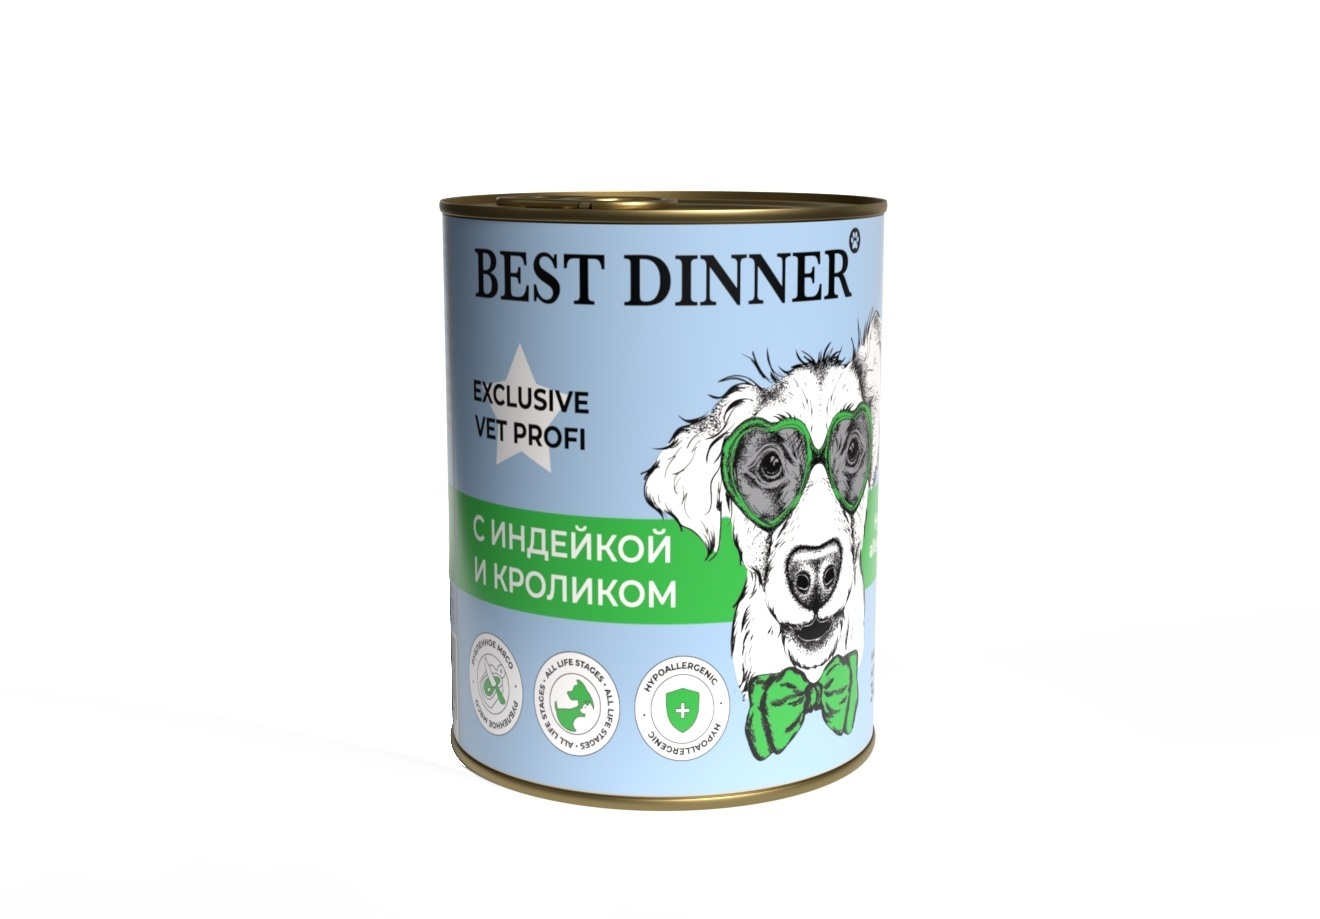 Best Dinner Best Dinner гипоаллергенные консервы Индейка и кролик, для собак всех пород (340 г) best dinner best dinner гипоаллергенные консервы с кониной и рисом для собак всех пород 340 г